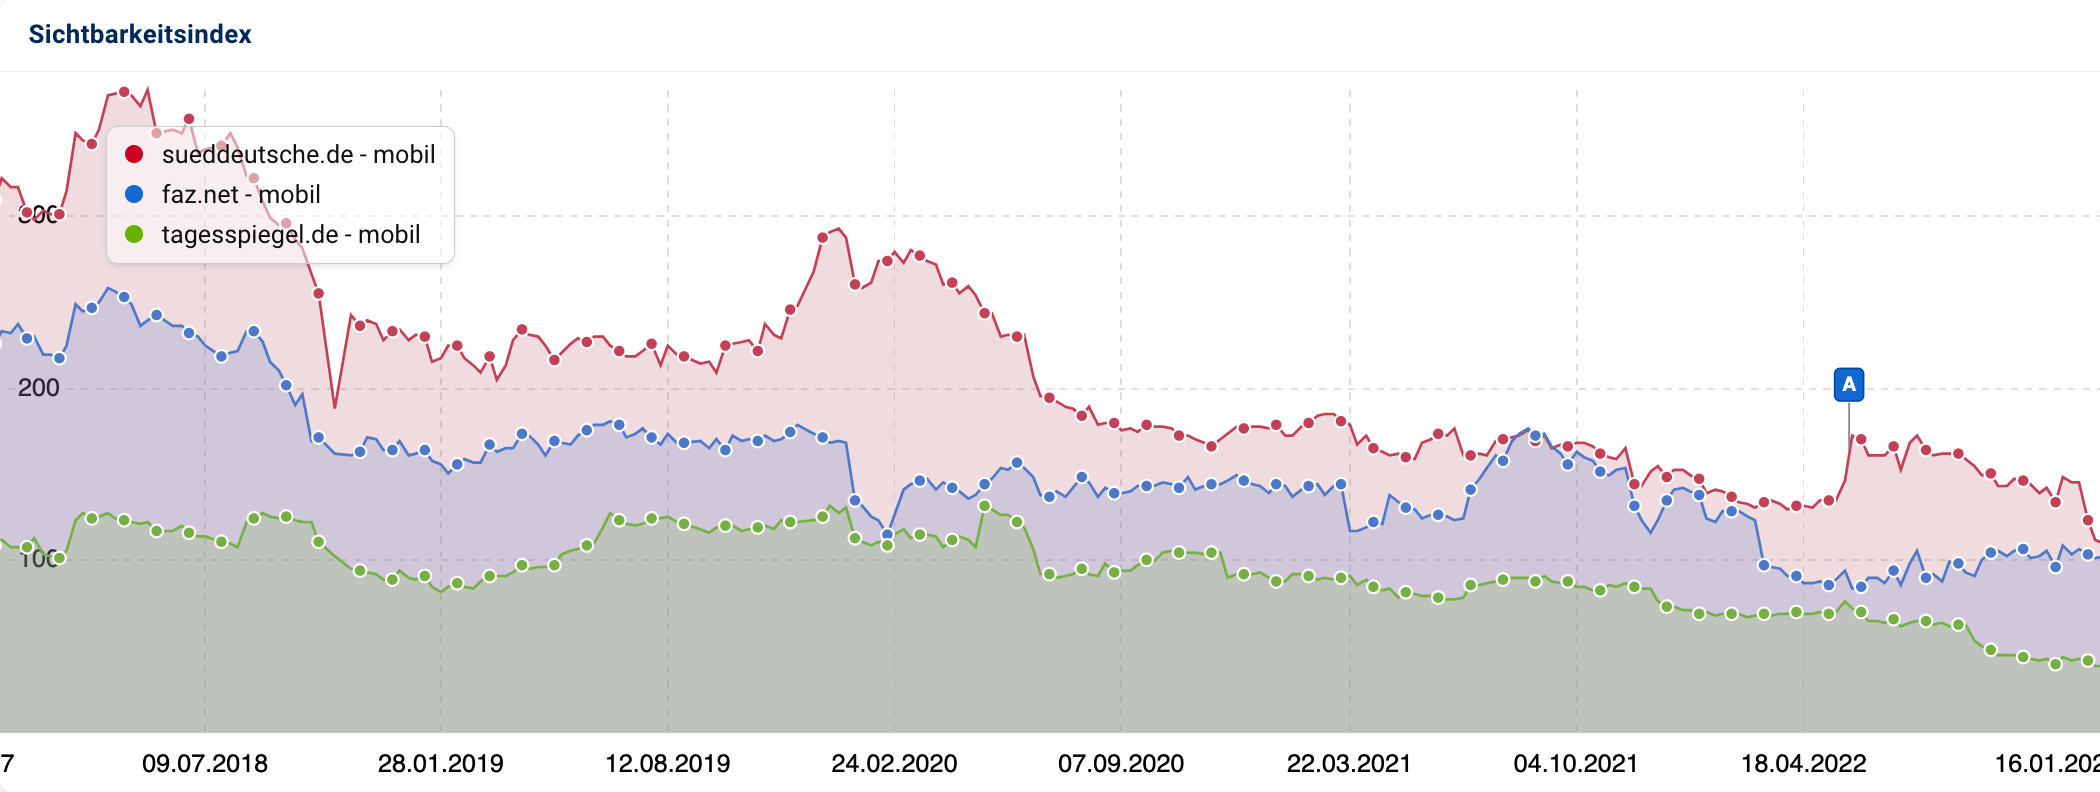 Die Sichtbarkeitsverläufe von sueddeutsche.de, faz.net und tagesspiegel.de im Vergleich. Alle Domains haben in den letzten Jahren mehr oder weniger startk verloren.